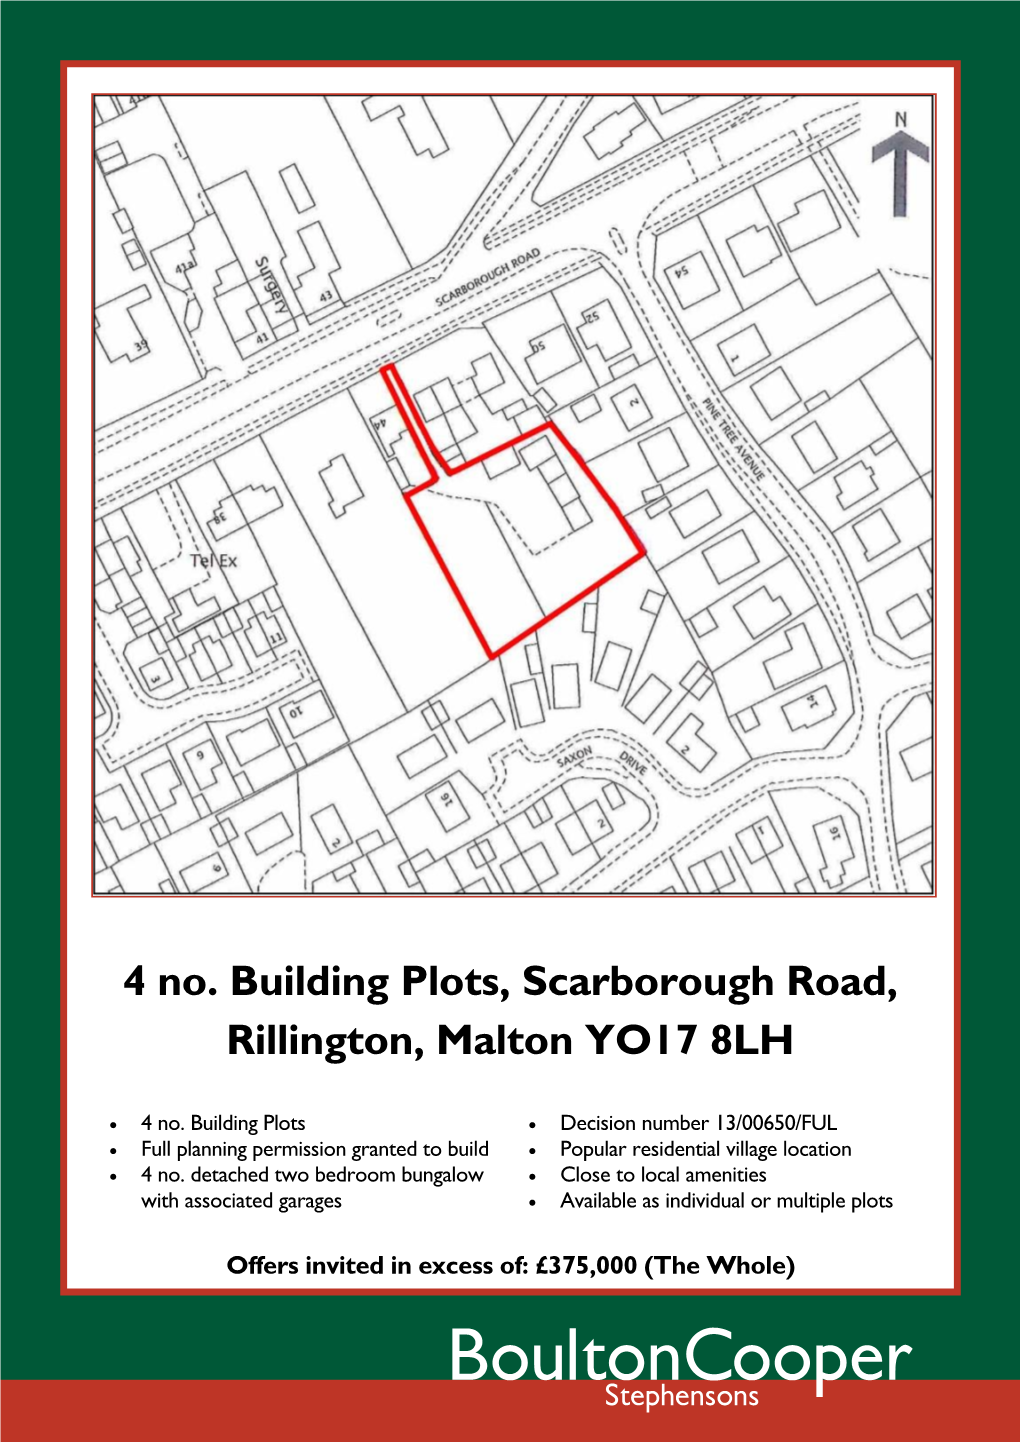 4 No. Building Plots, Scarborough Road, Rillington, Malton YO17 8LH